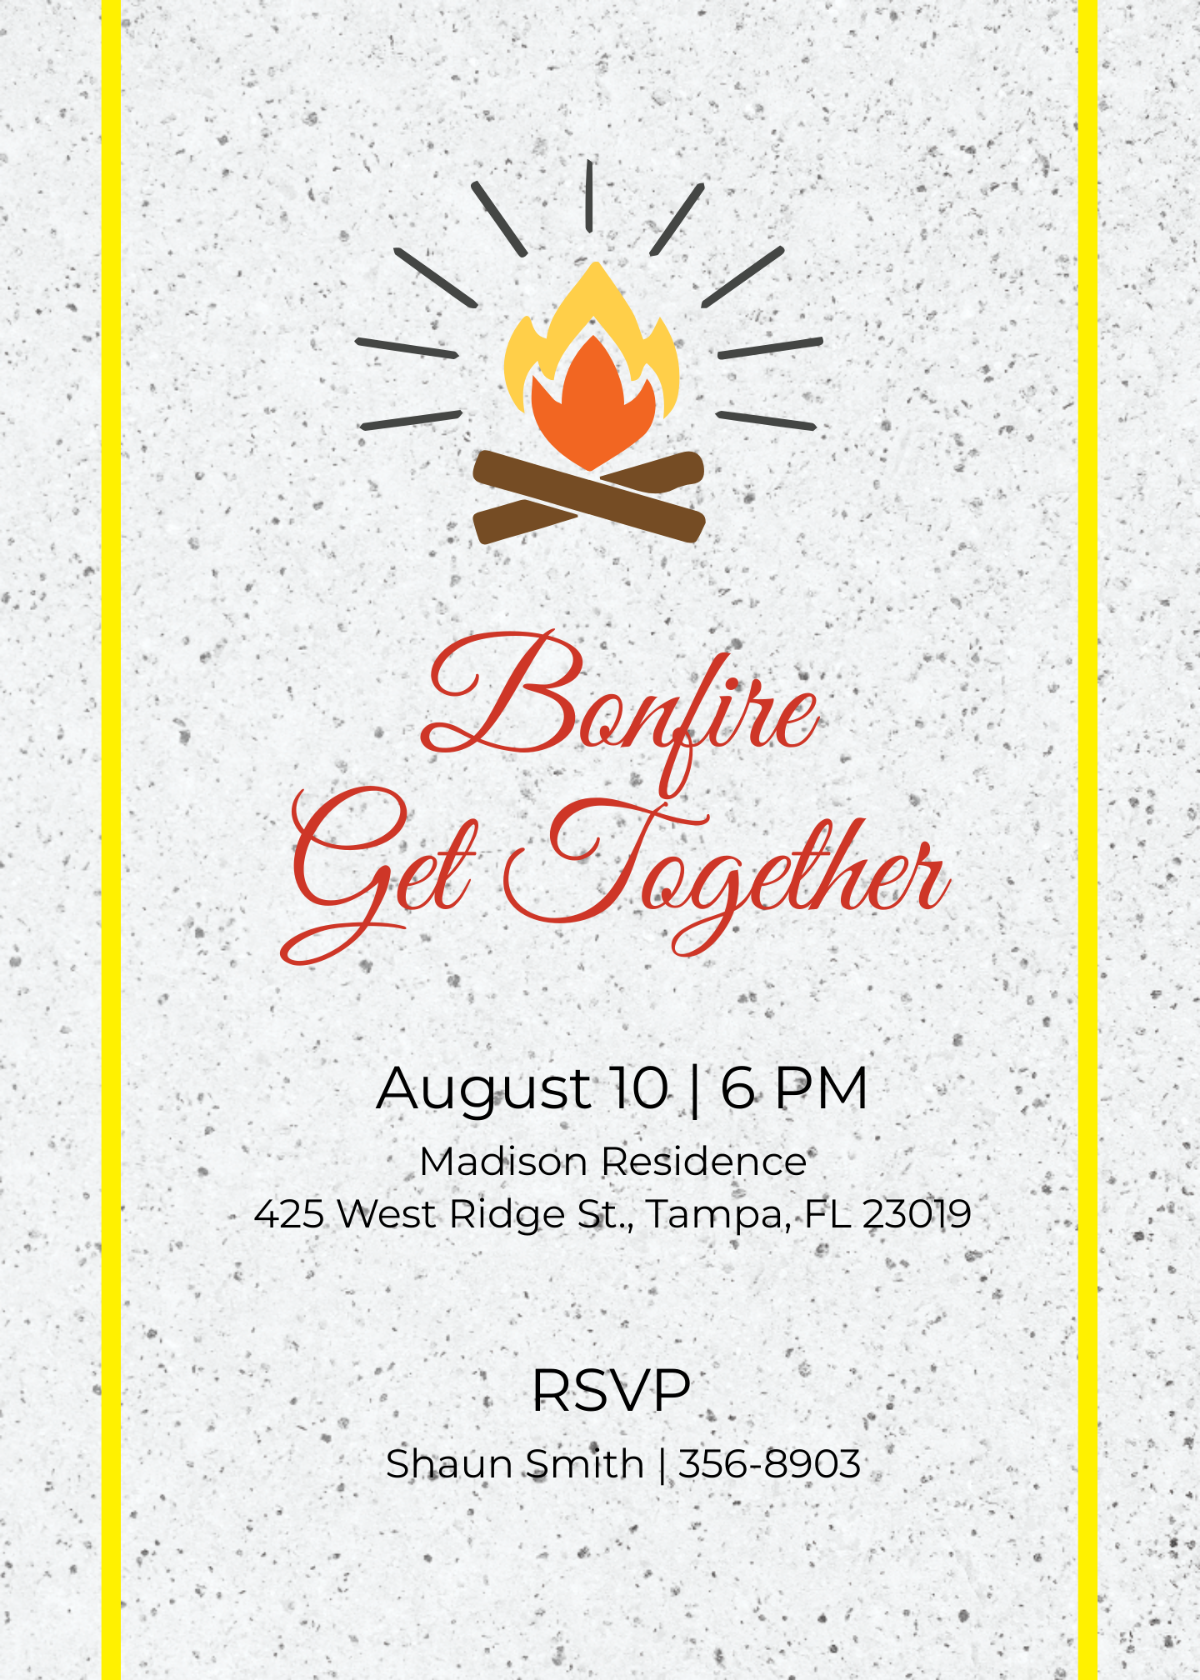 Bonfire Get Together Invitation Template